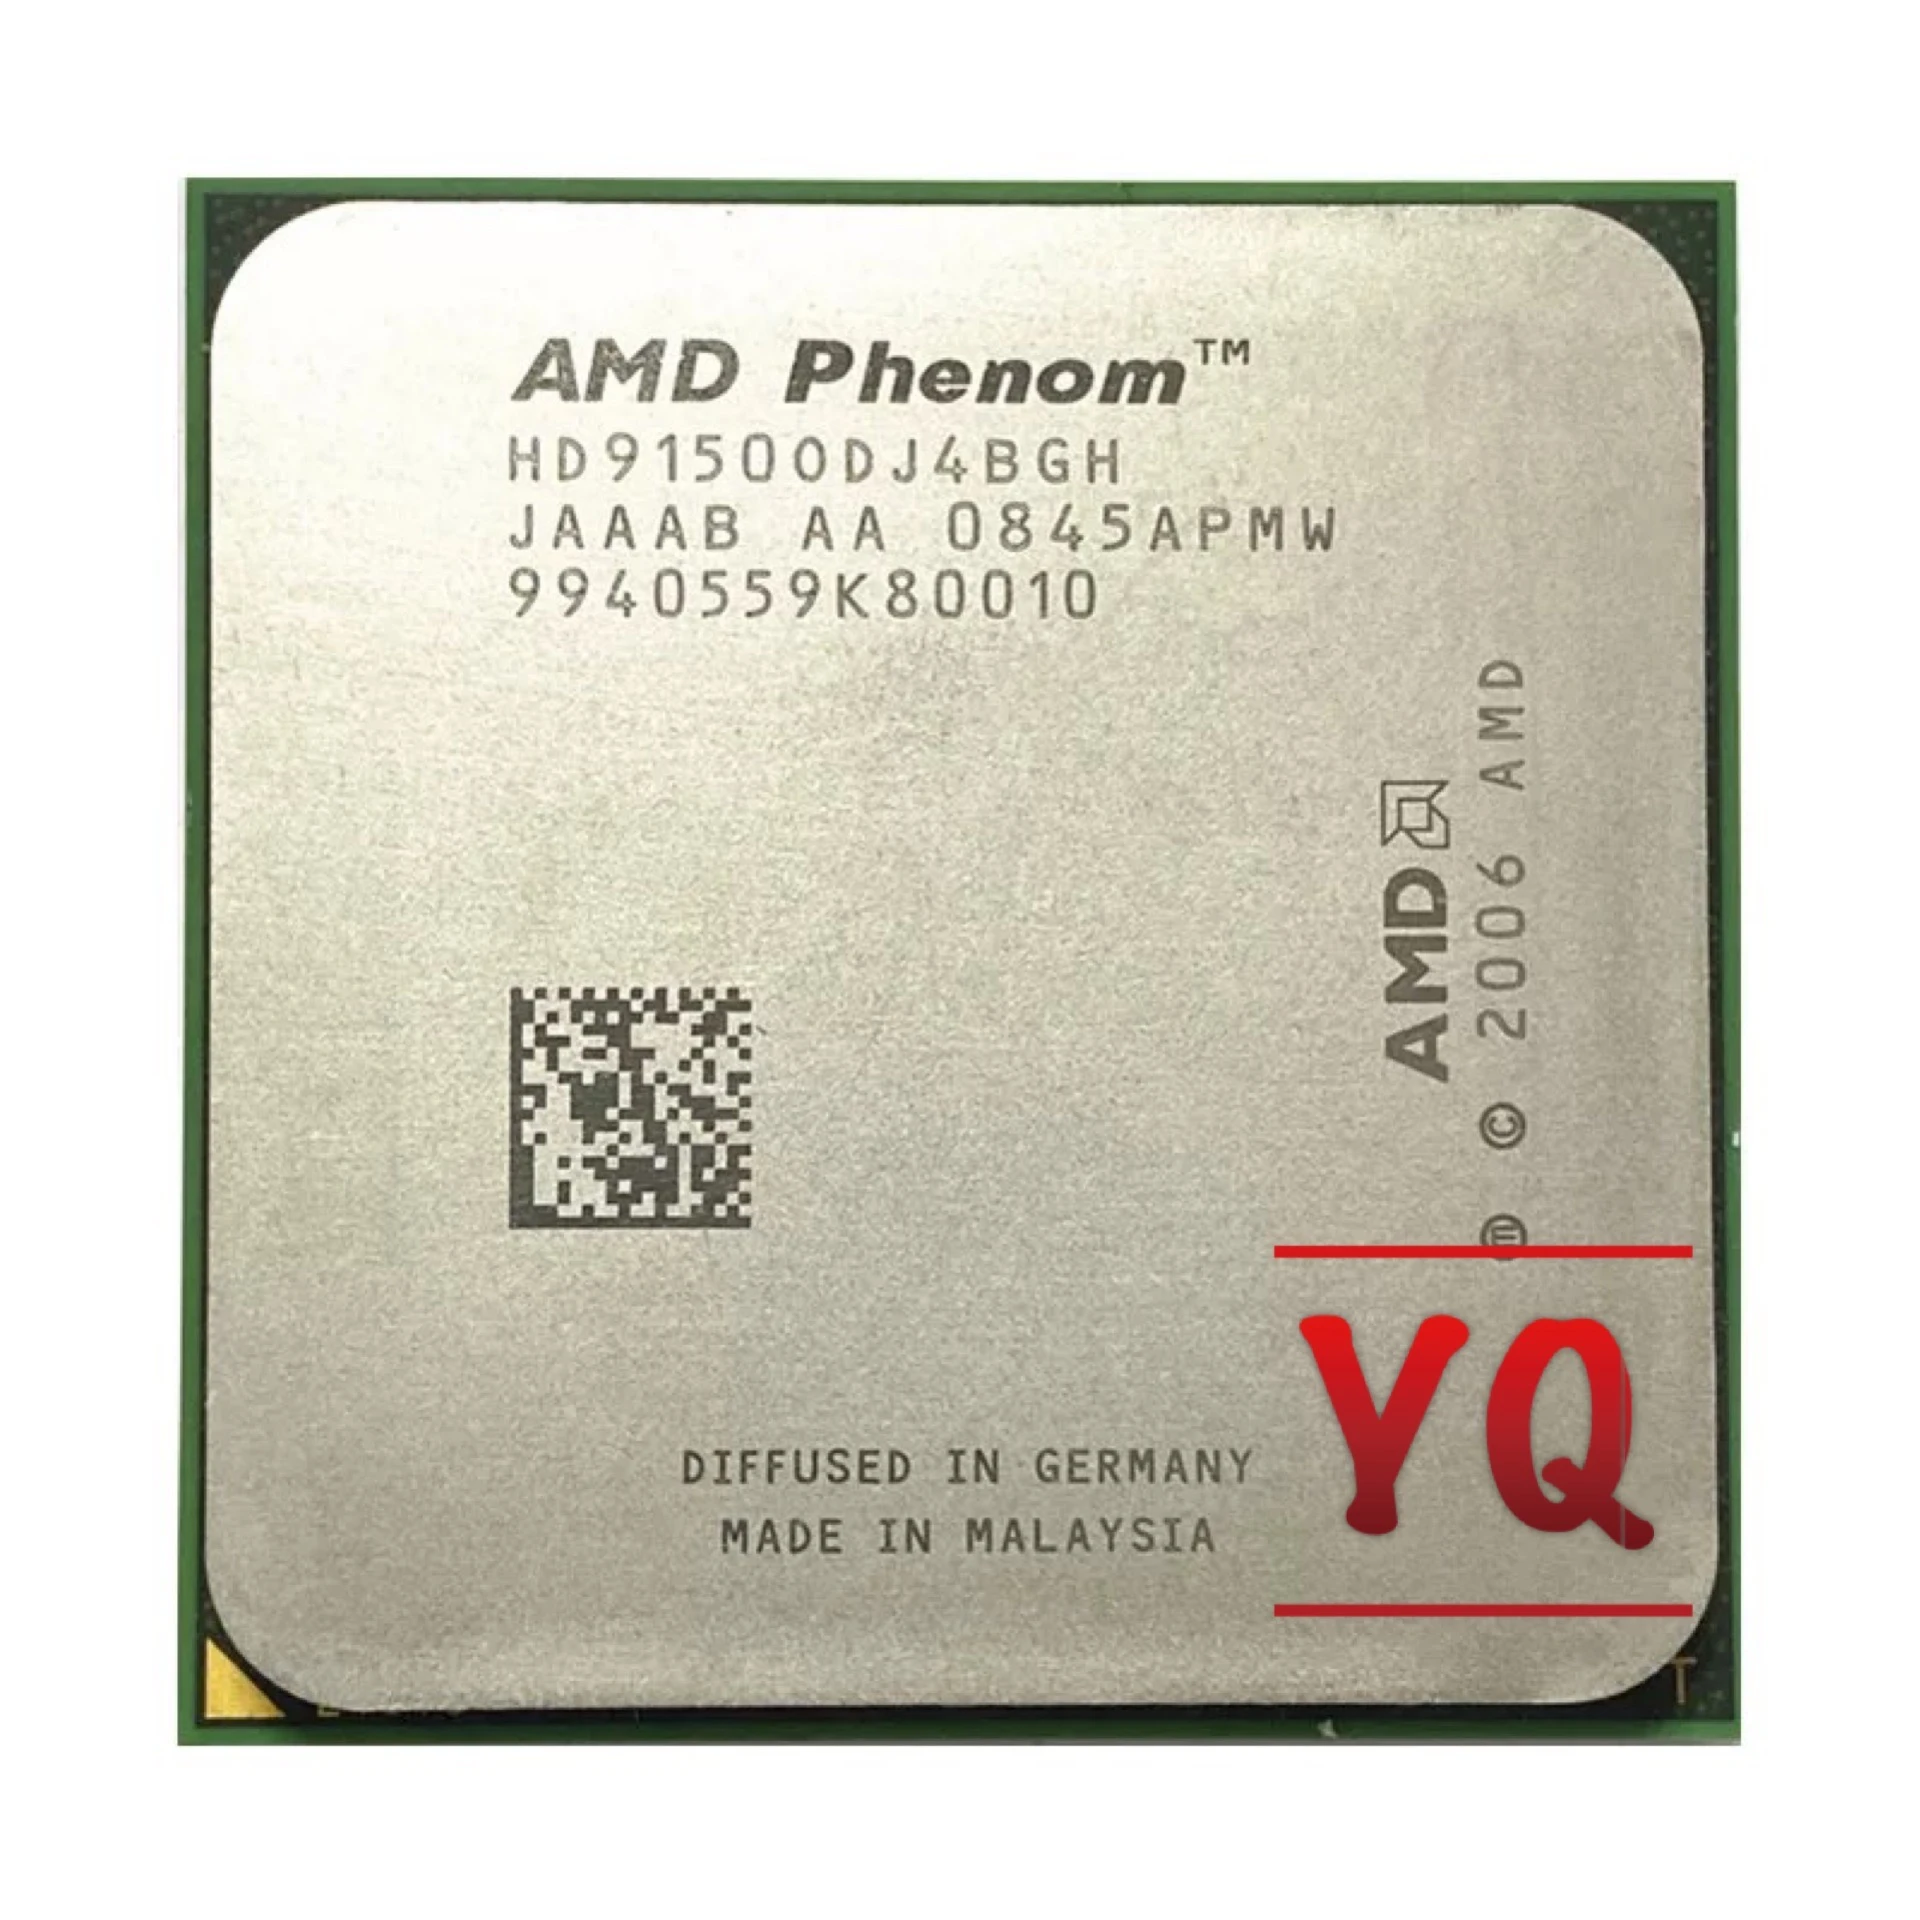 AMD Phenom X4 9150 X4 9150e Quad-Core DeskTop 1.8GHz CPU HD9150ODJ4BGH Socket AM2+/940pin processors